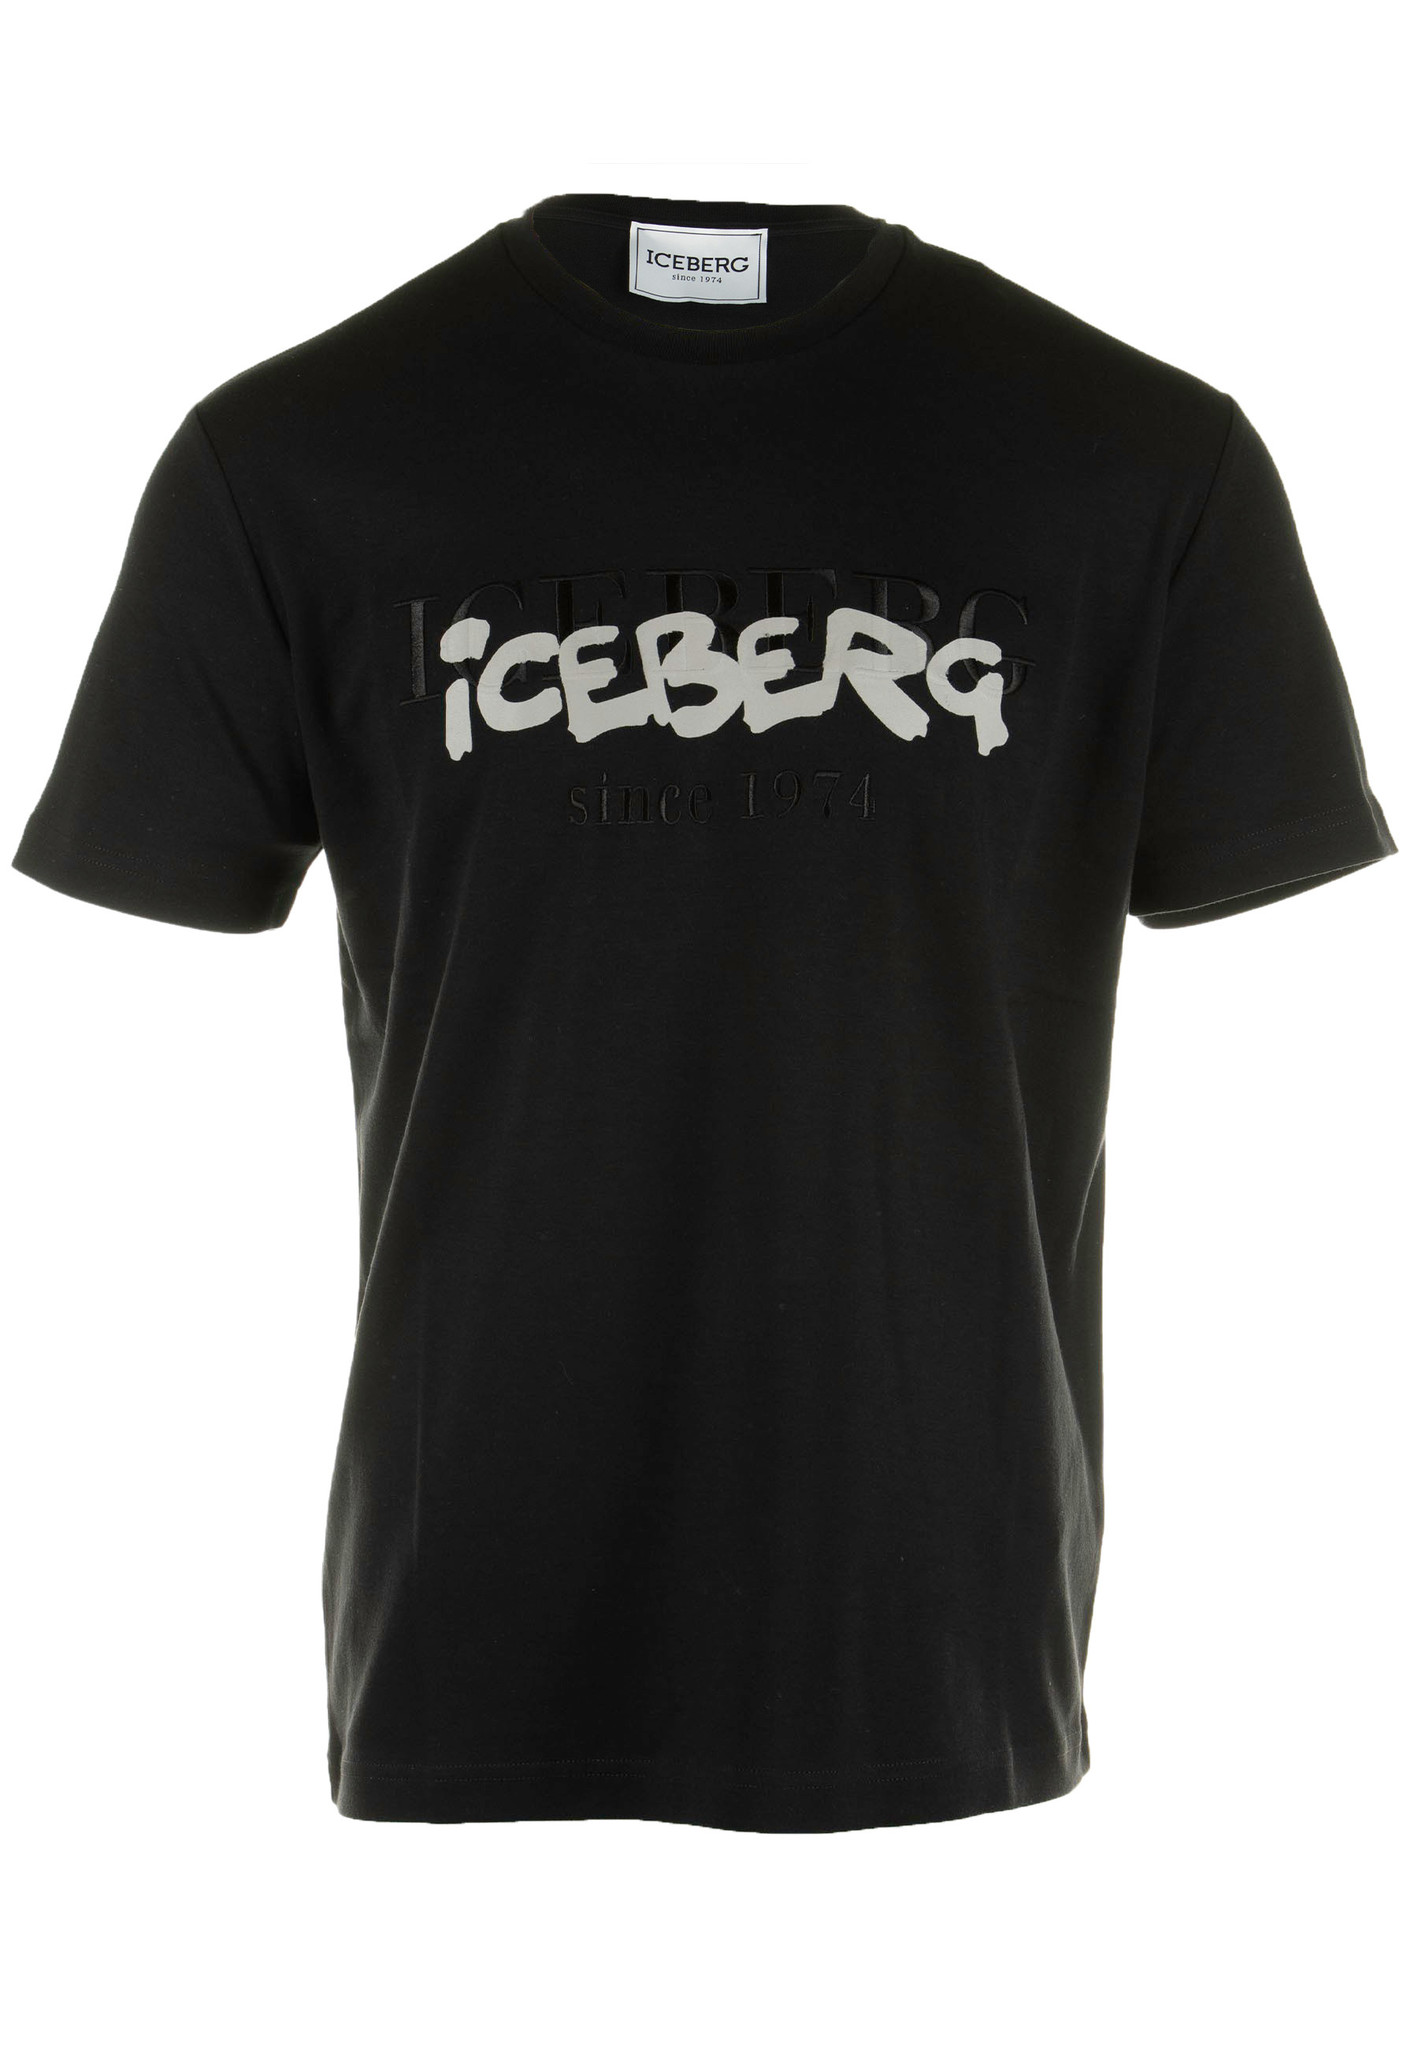 Iceberg Shirt Zwart Katoen maat XL t-shirts zwart